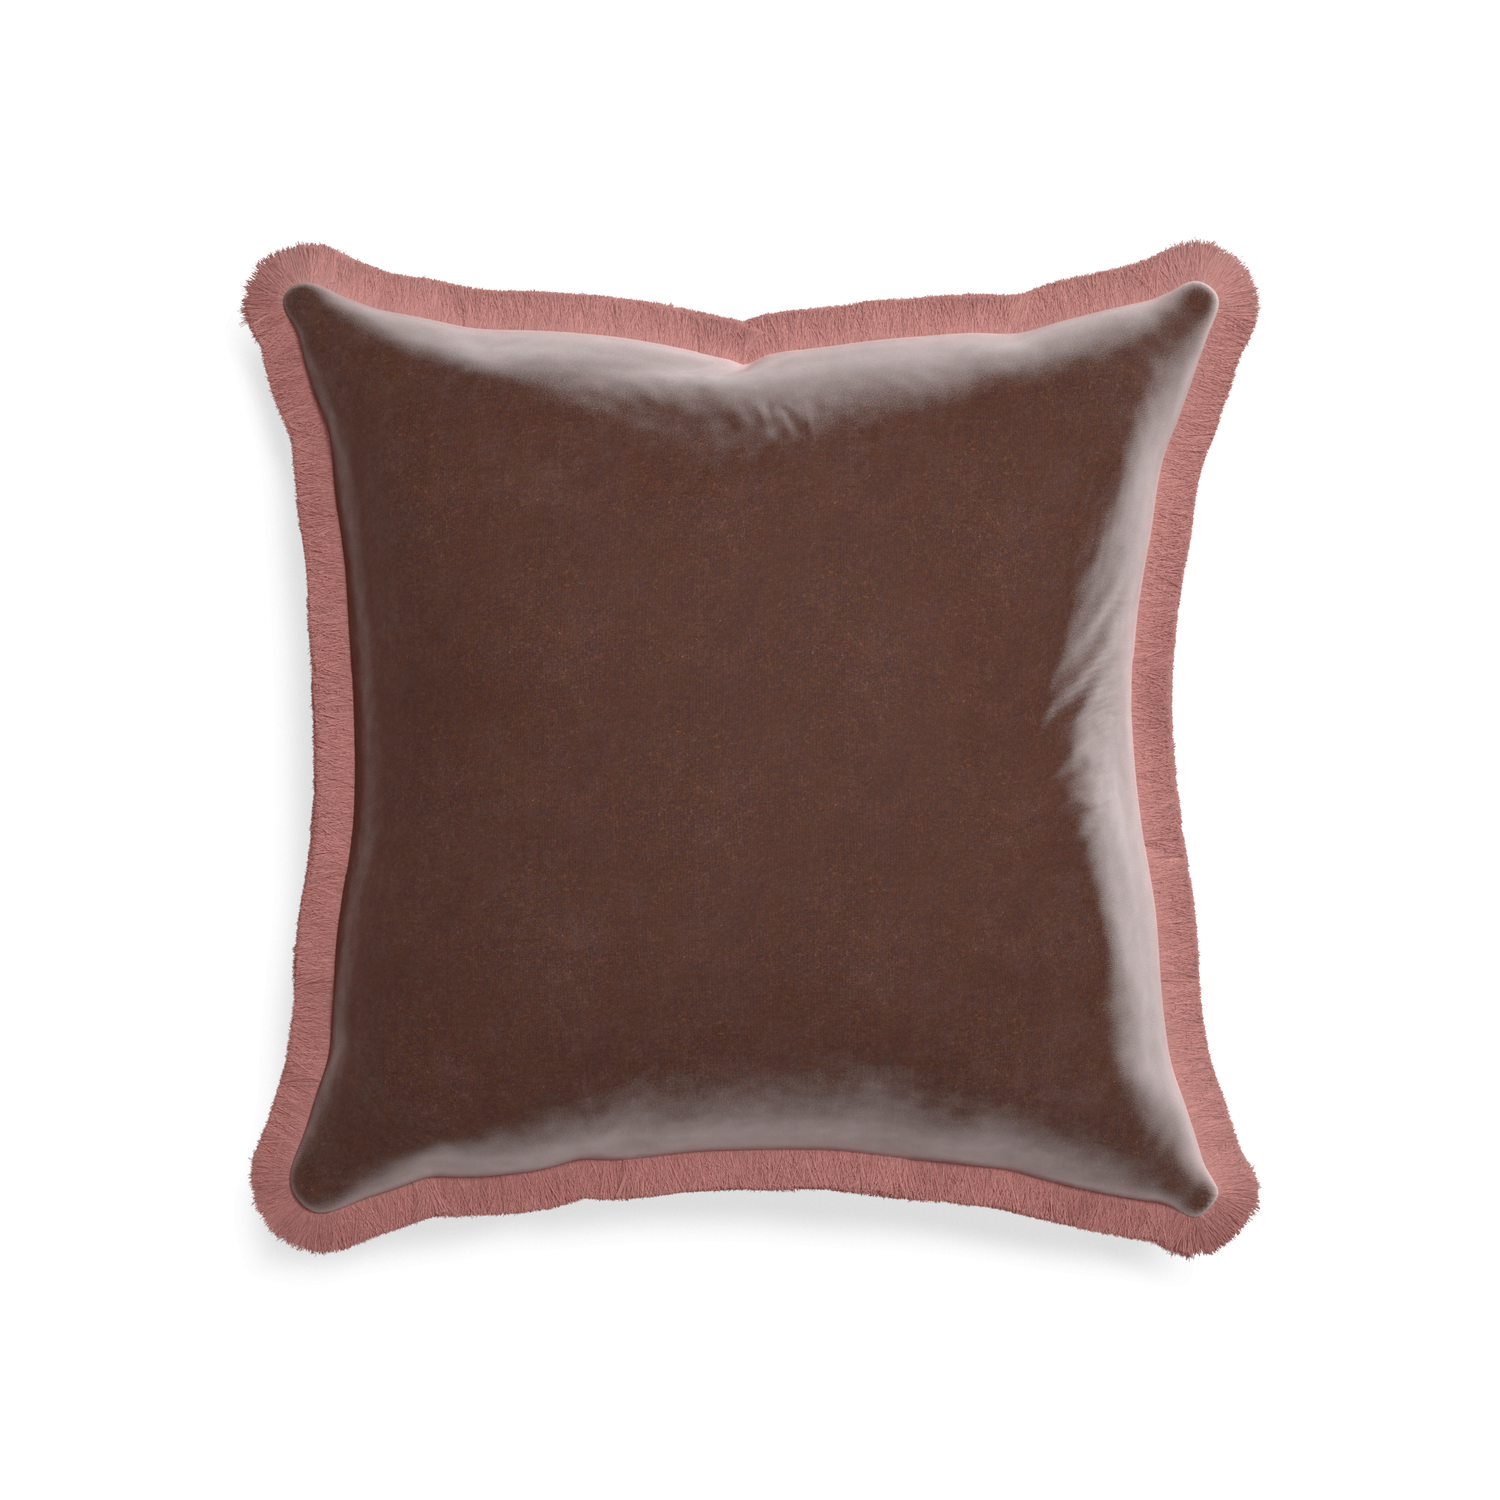 20-square walnut velvet custom pillow with d fringe on white background